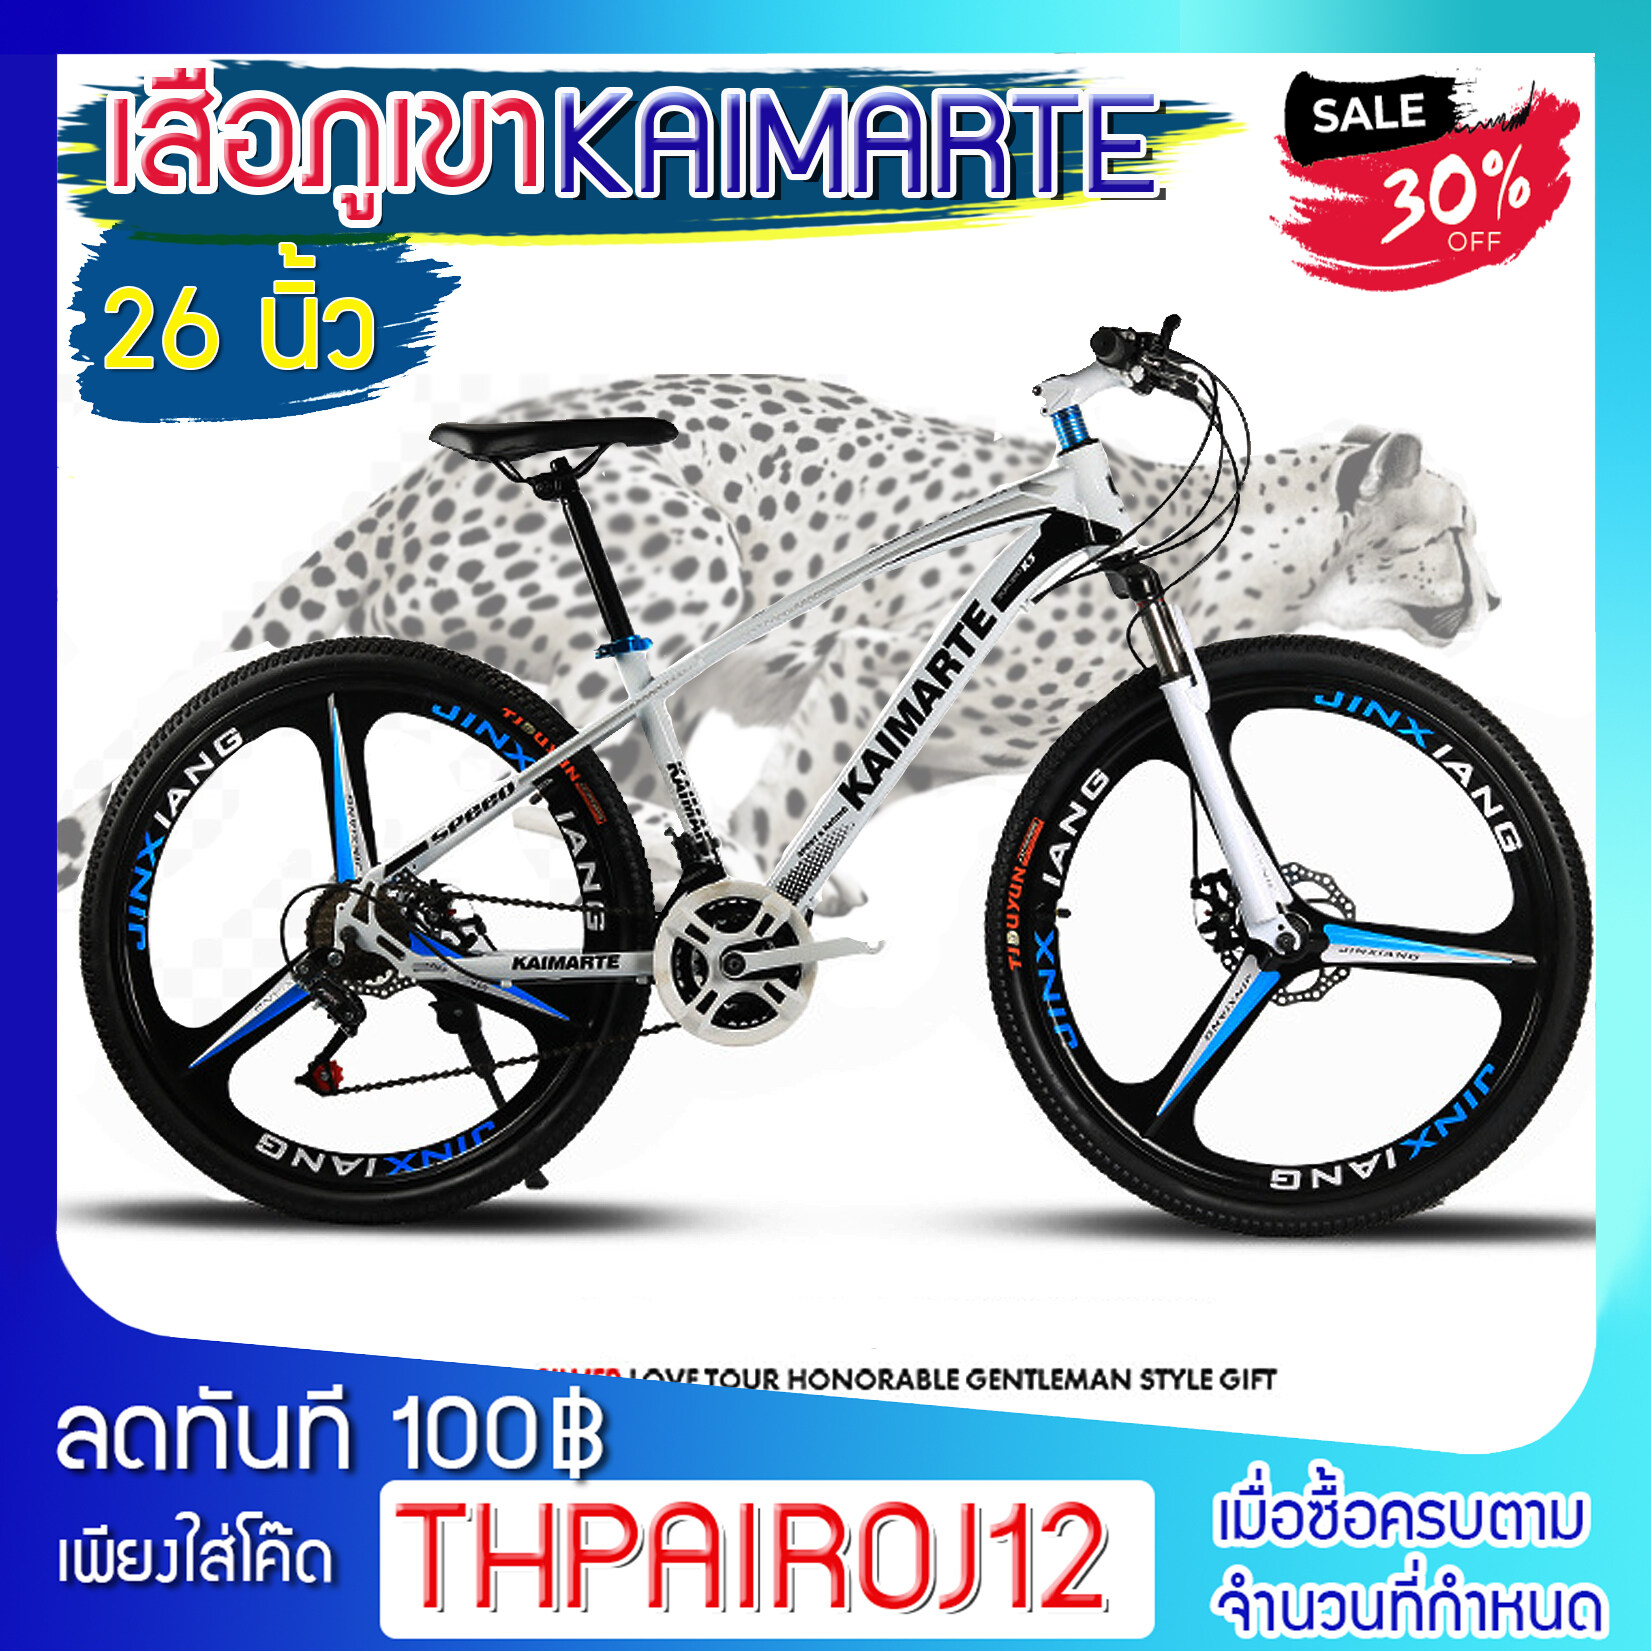 < ประกอบฟรี > จักรยานเสือภูเขา Kamarte ขนาดล้อ 26 นิ้ว เกียร์ 21 สปีด รุ่น K-980 เเข็งเเรง ทนทาน ในราคาสบาย กระเป๋า10140